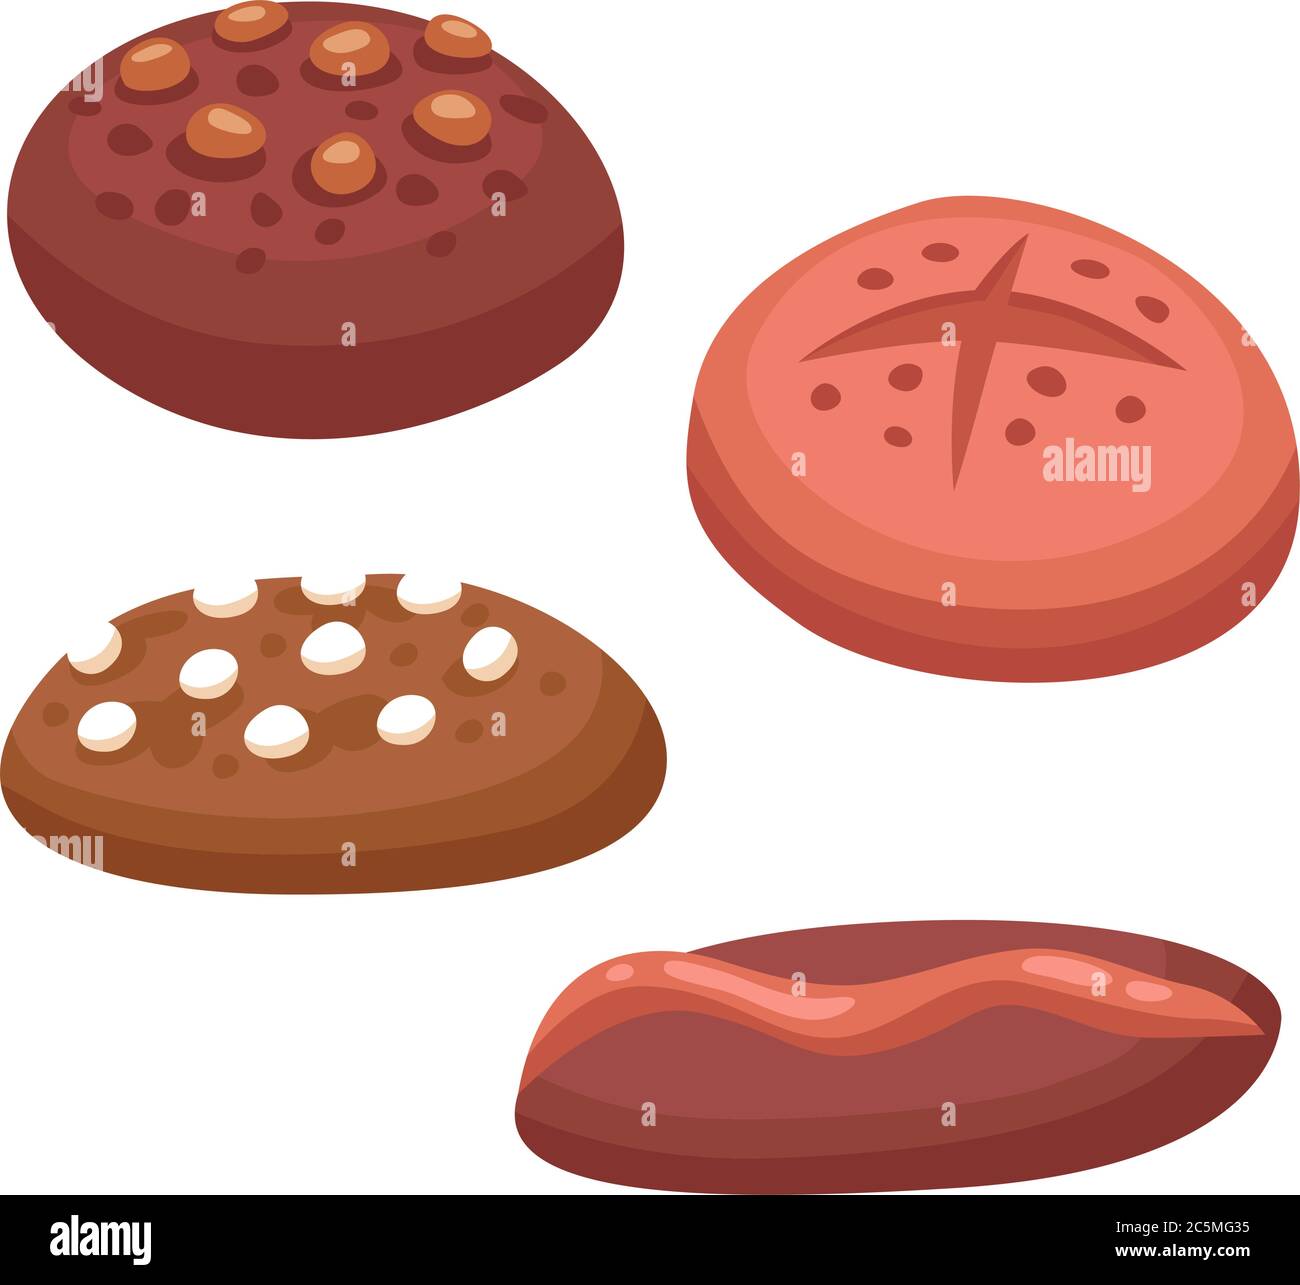 Illustrazione vettoriale isolata di torta di biscotti diversa. Biscotti di cibo di torte di zucchero isolati su sfondo bianco. Illustrazione Vettoriale